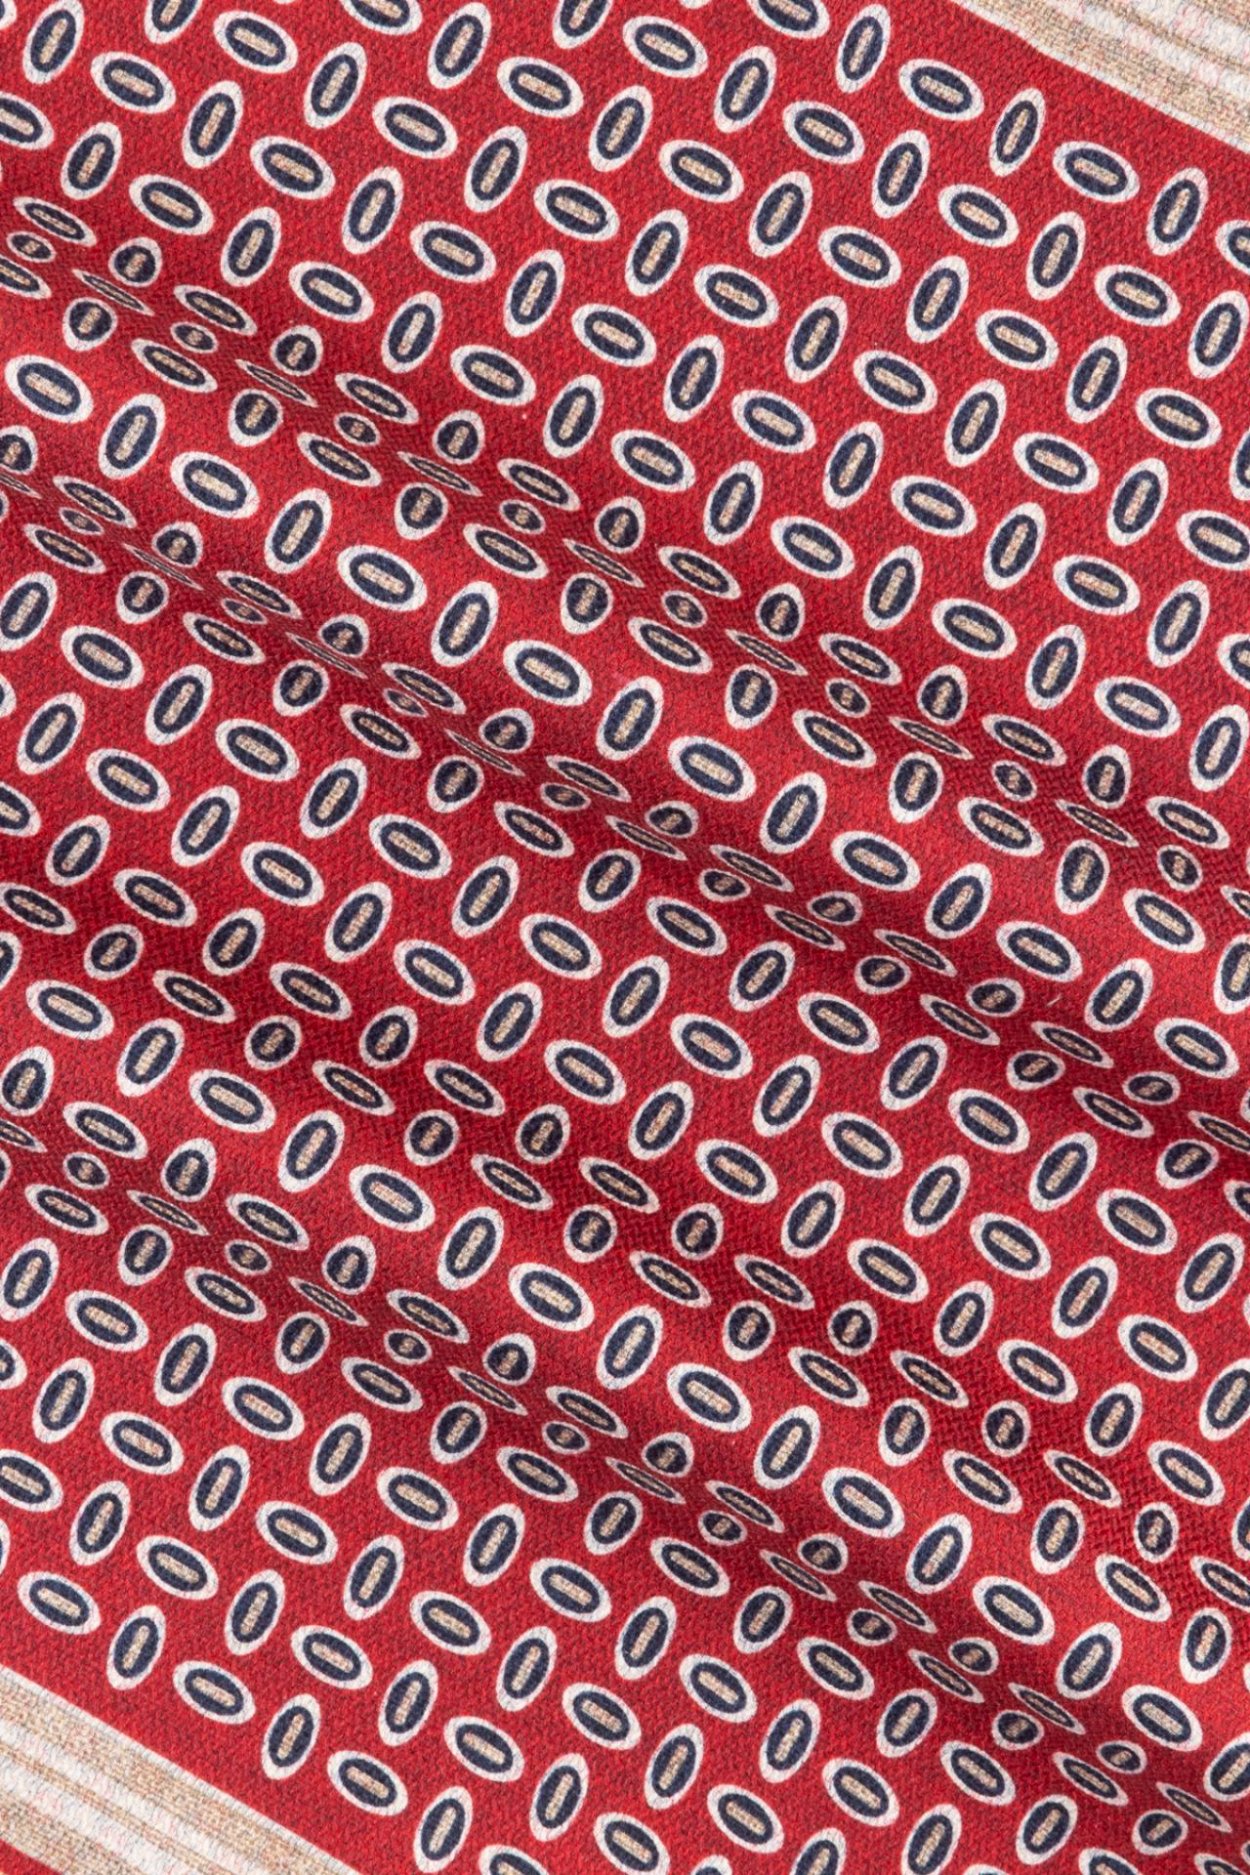 Červený hedvábný kapesníček se vzorem